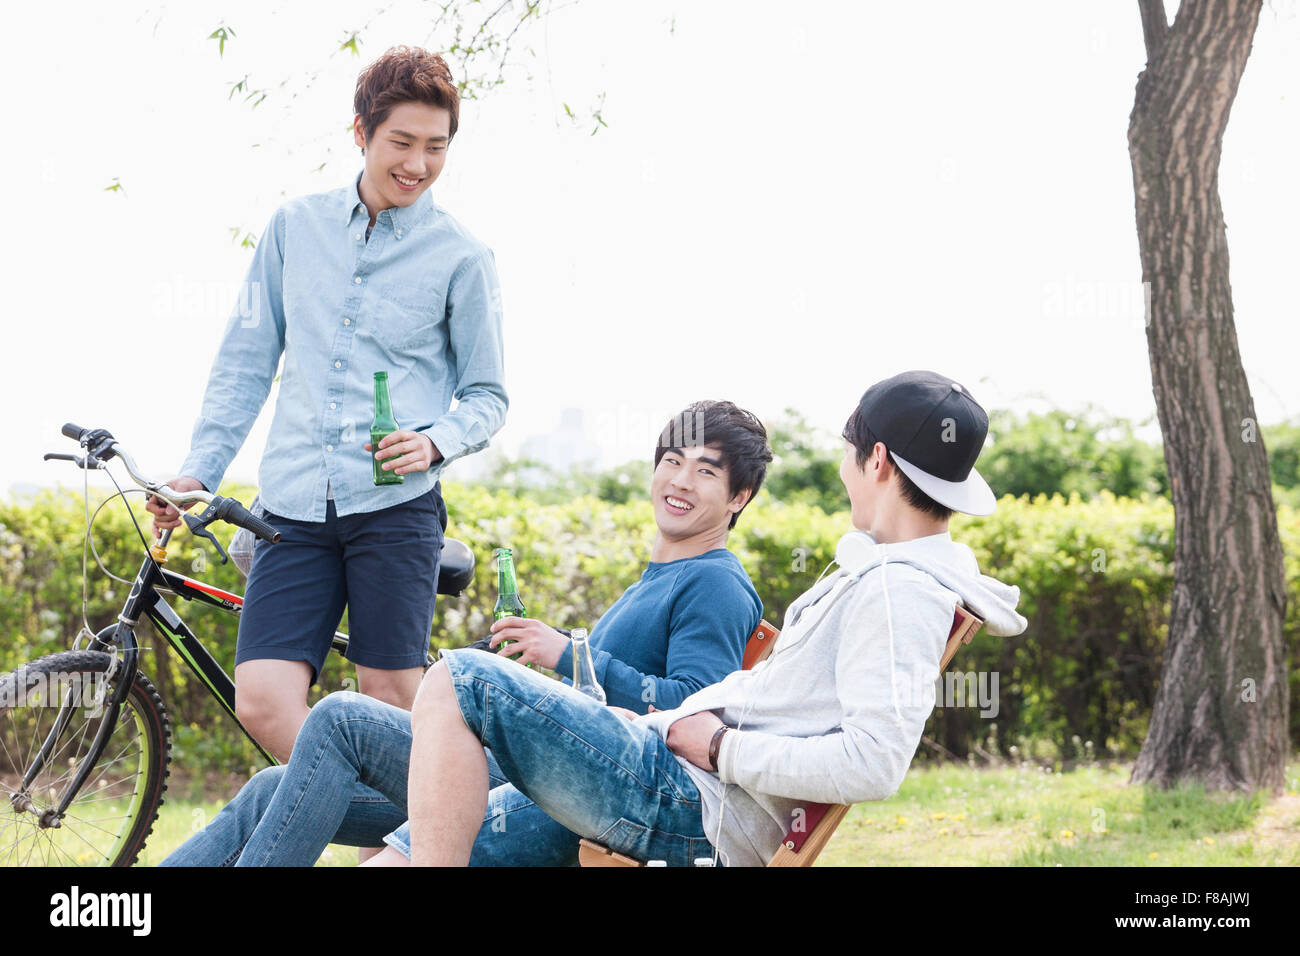 Trois jeunes hommes s'amuser au parc holding beer bottles Banque D'Images